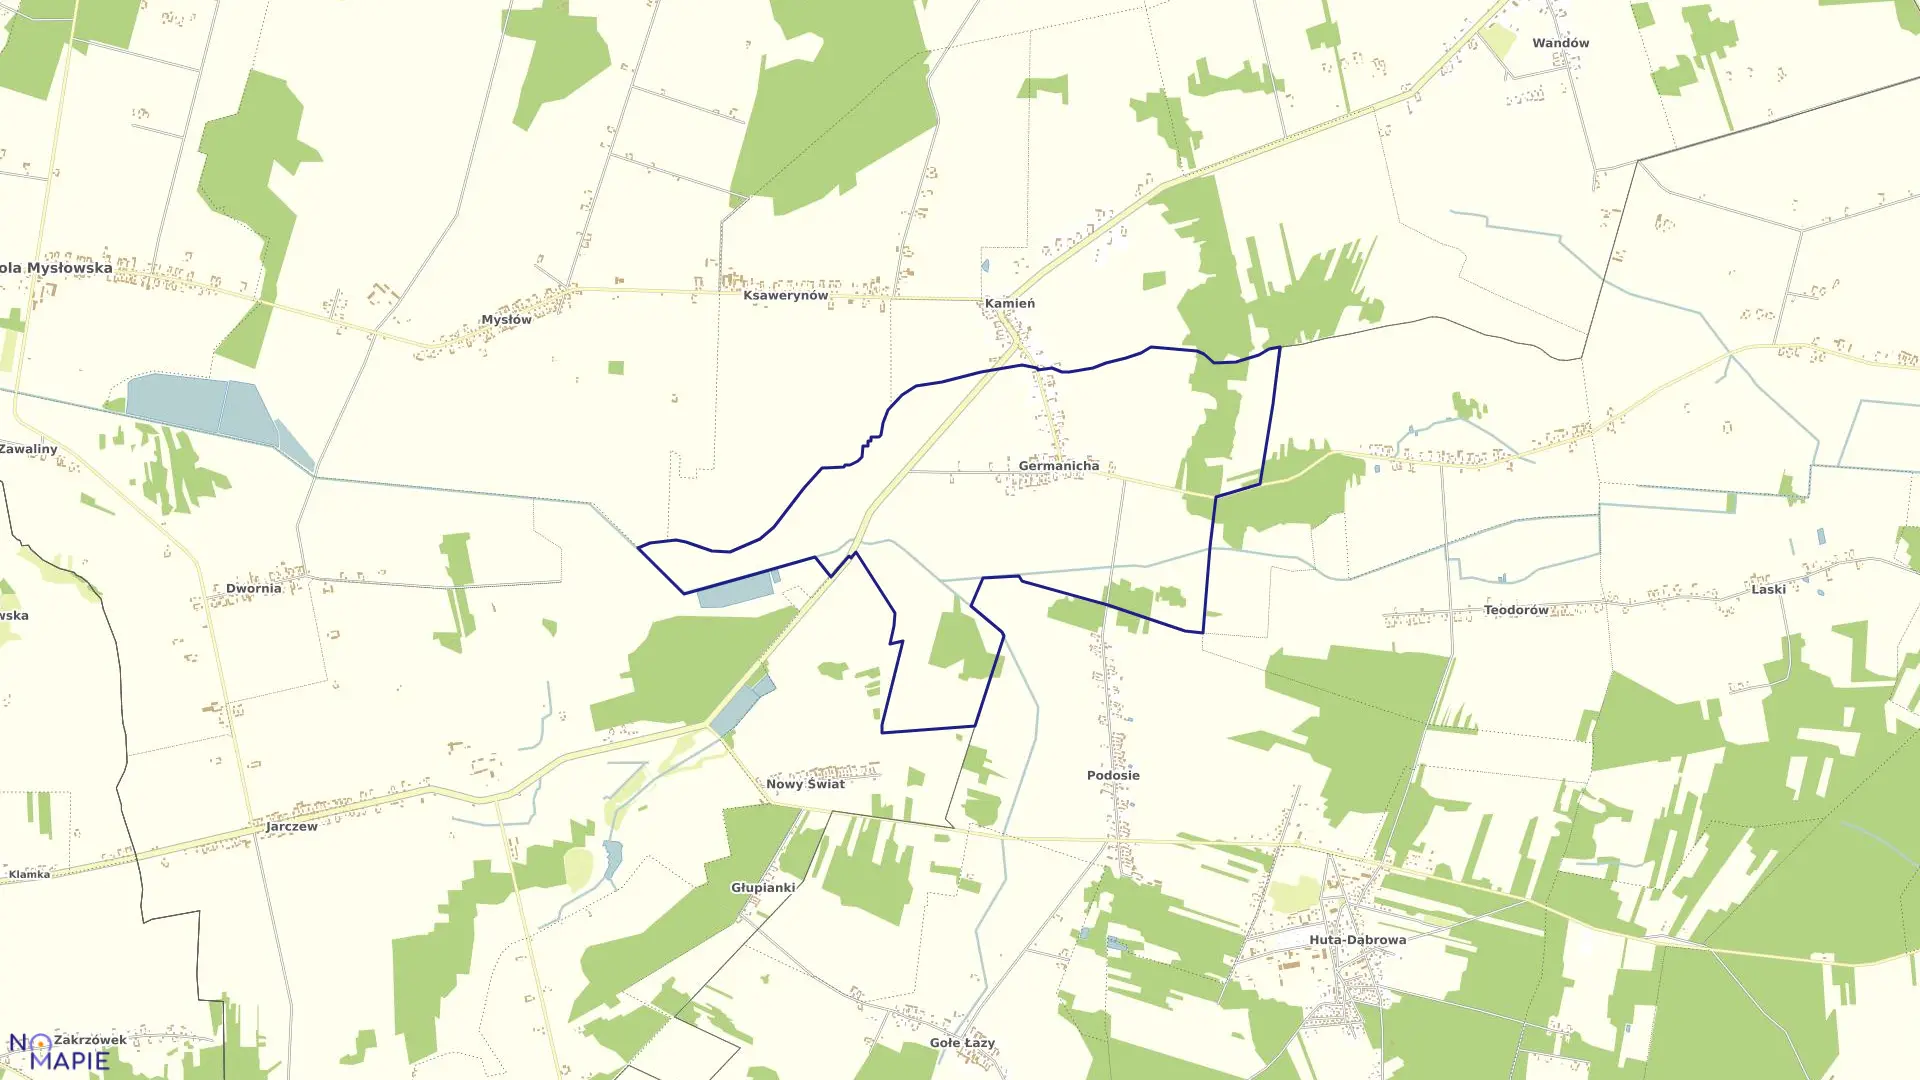 Mapa obrębu GERMANICHA w gminie Wola Mysłowska